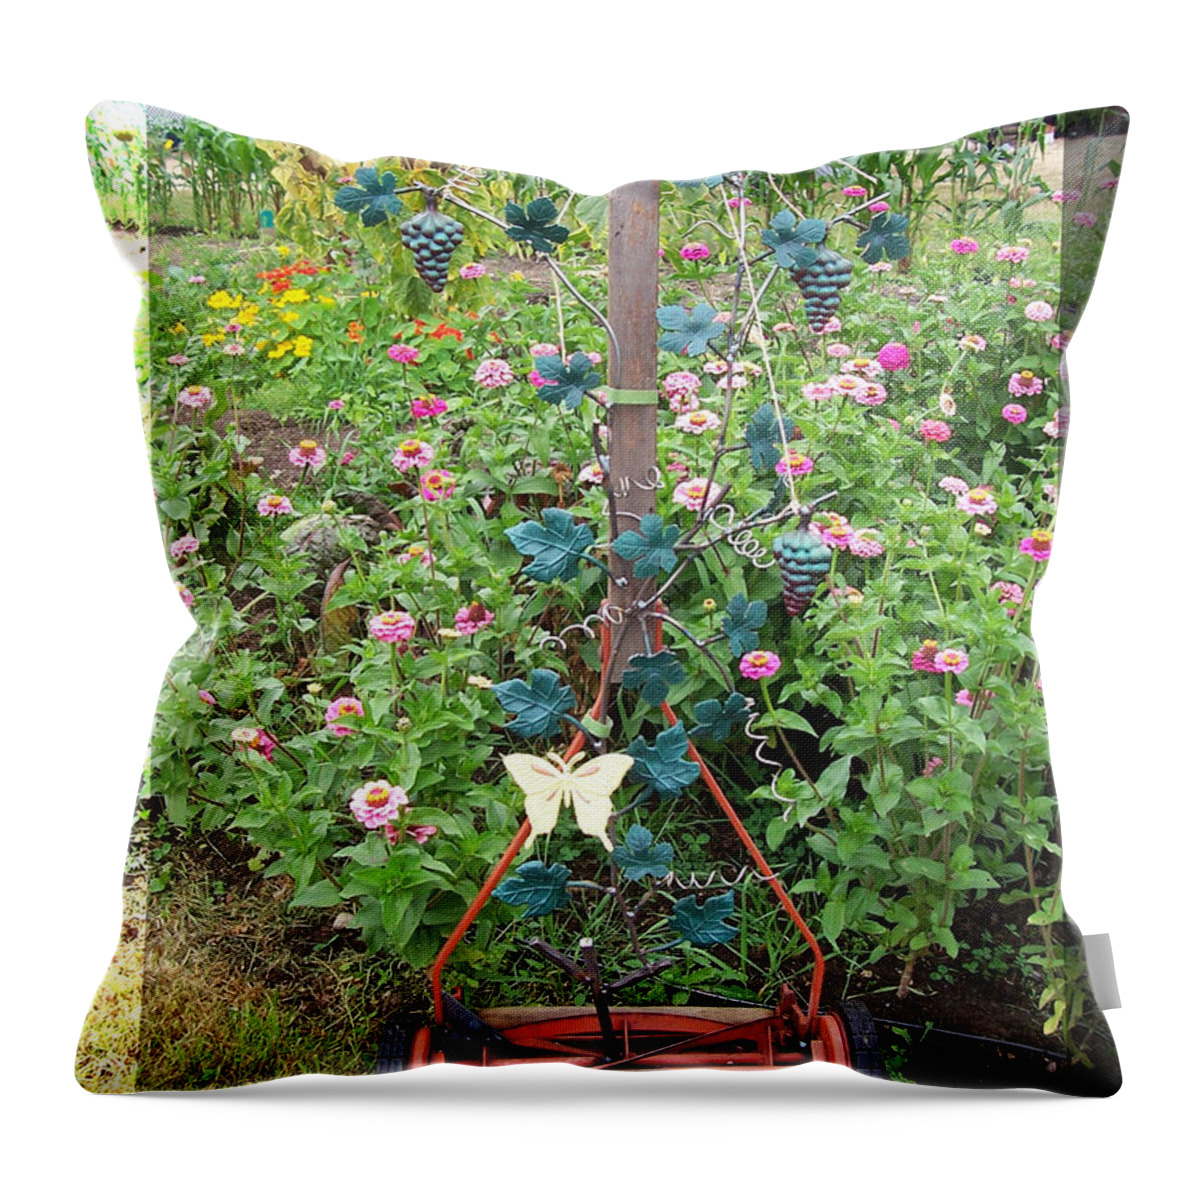 Garden Throw Pillow featuring the sculpture Mini vinyard mower by JP Giarde